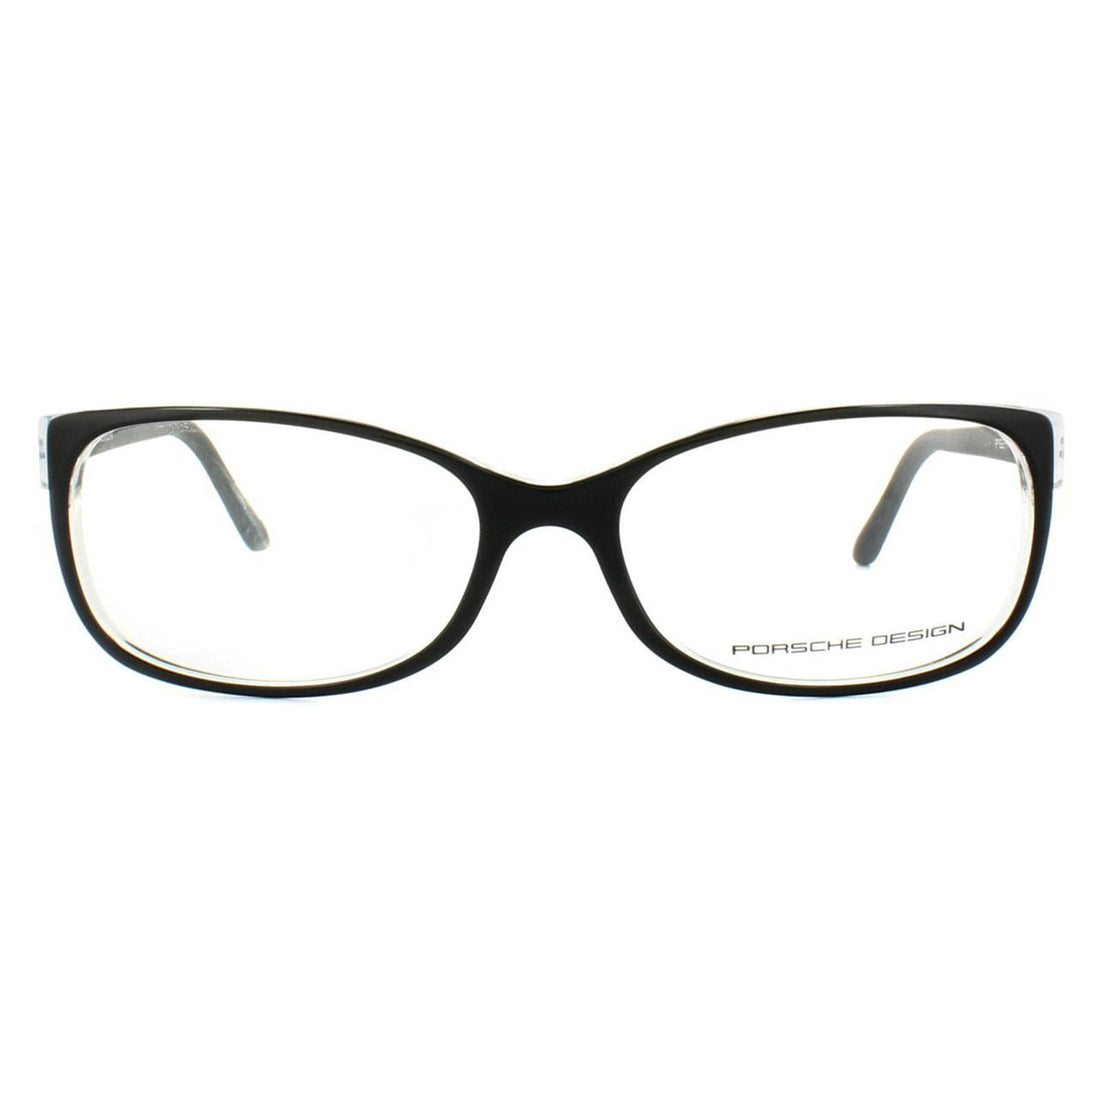 Porsche Design P8247 Glasses Frames Black on Crystal